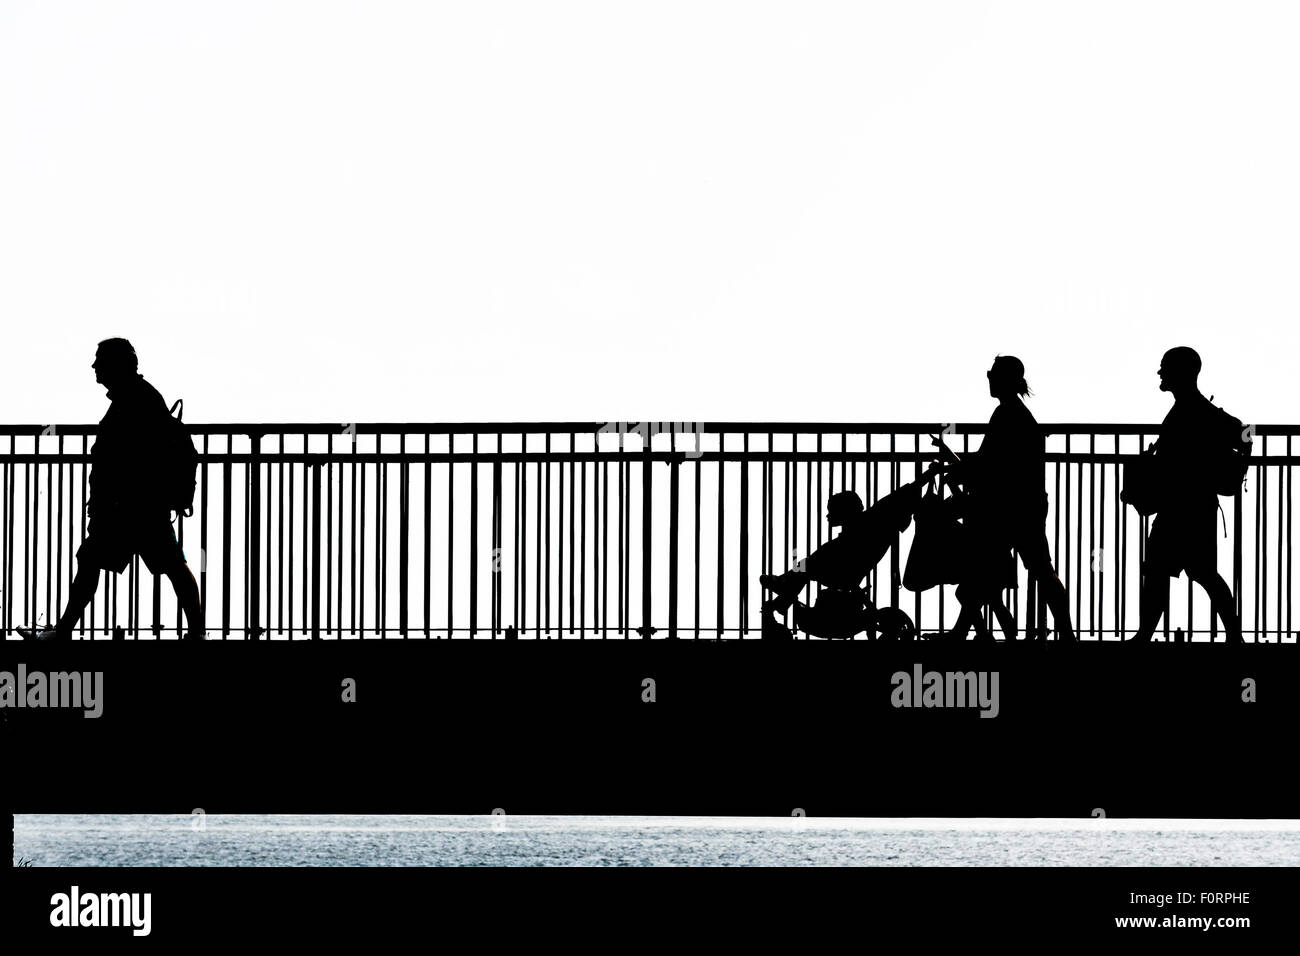 La silhouette de personnes marchant sur le pont de l'écart Louisa Broadstairs, Kent. Banque D'Images